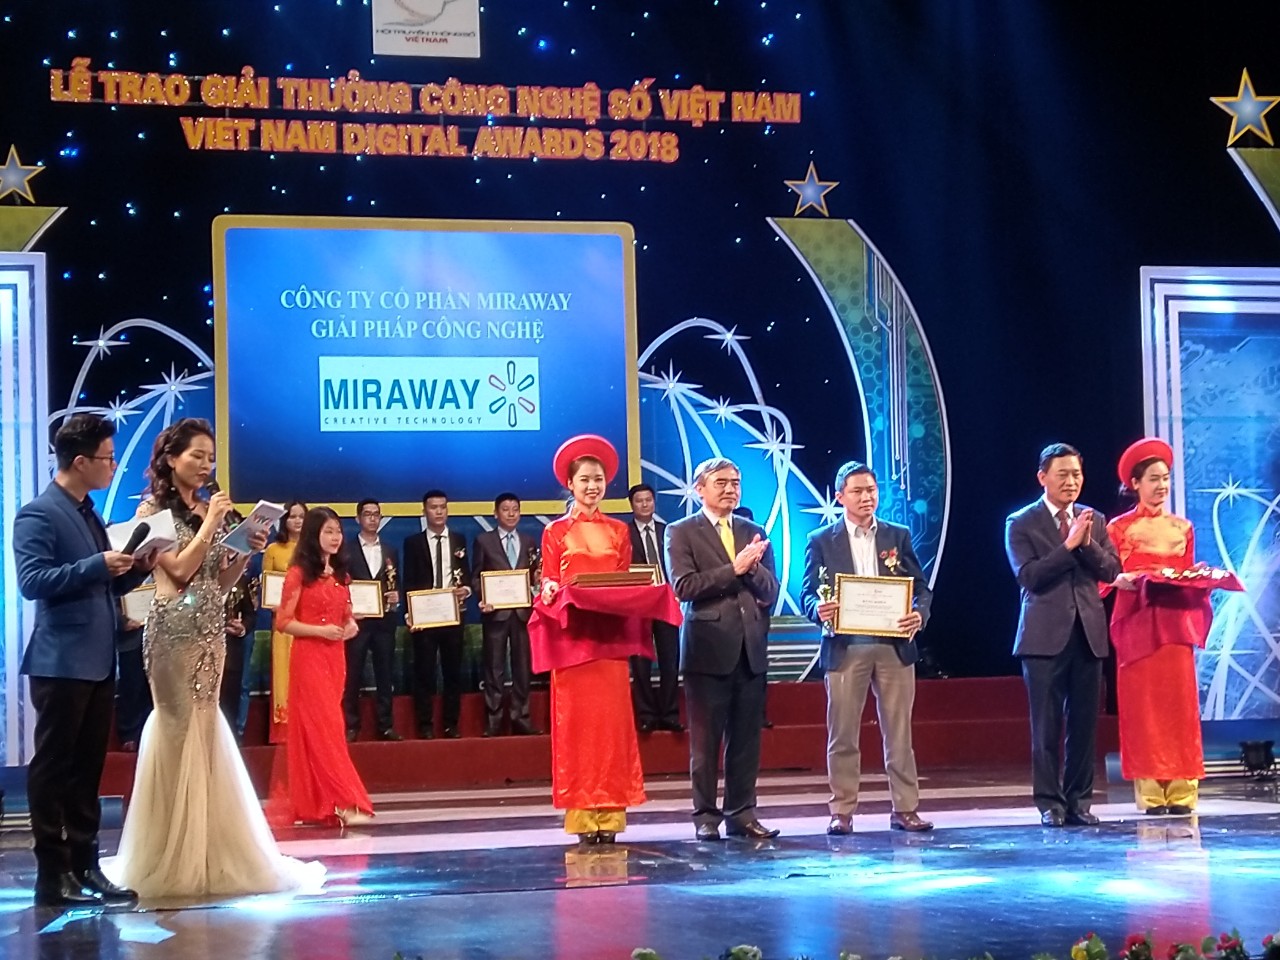 vietnam digital awards miraway cetm